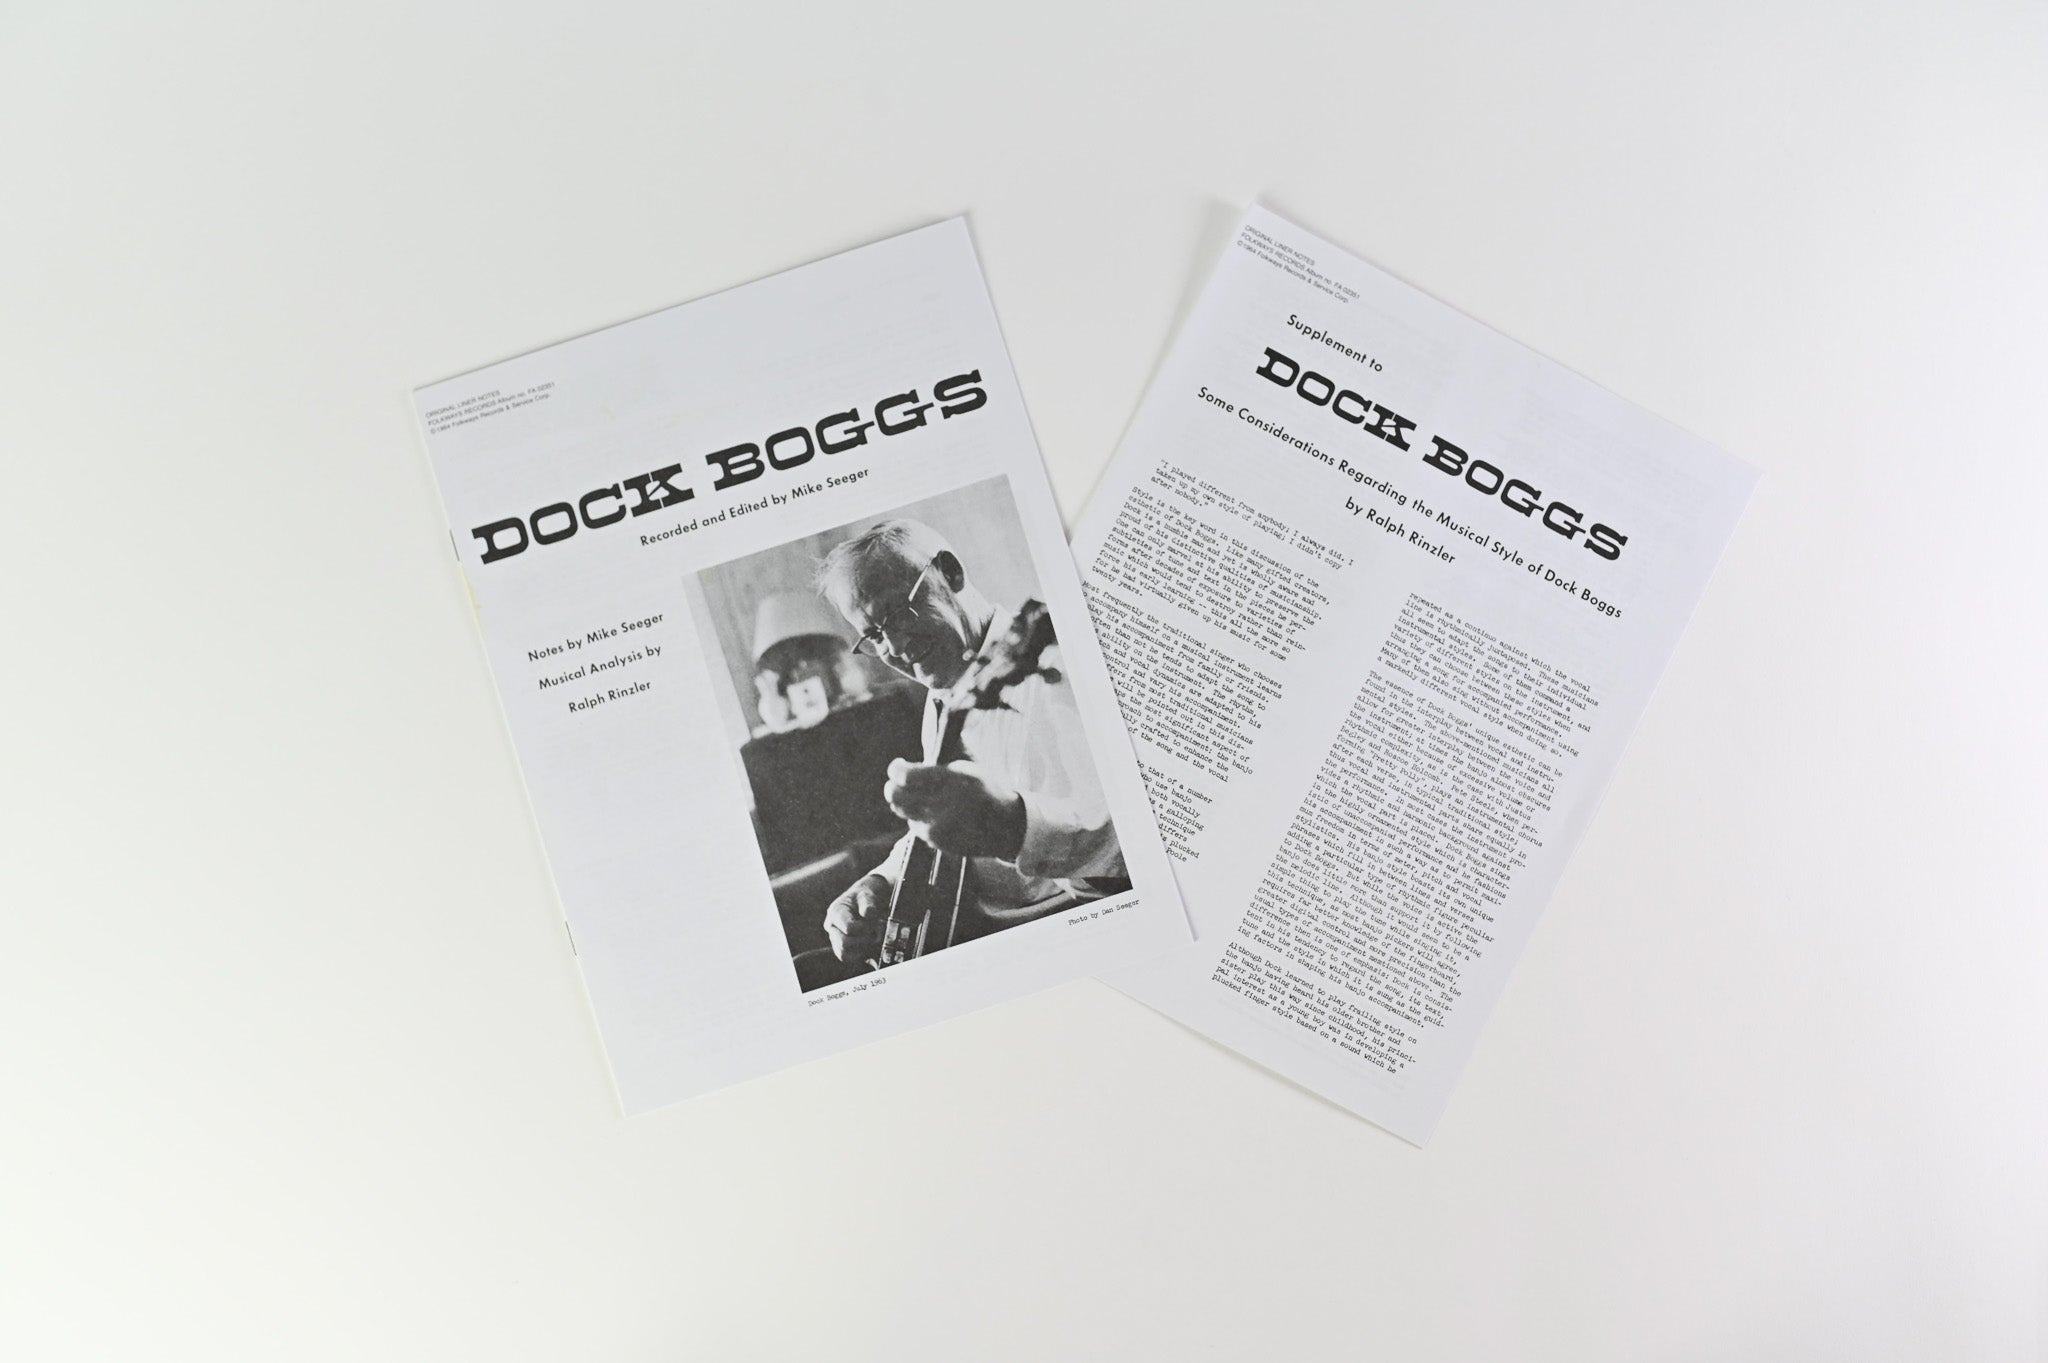 Dock Boggs - Legendary Singer & Banjo Player Reissue on Smithsonian Folkways